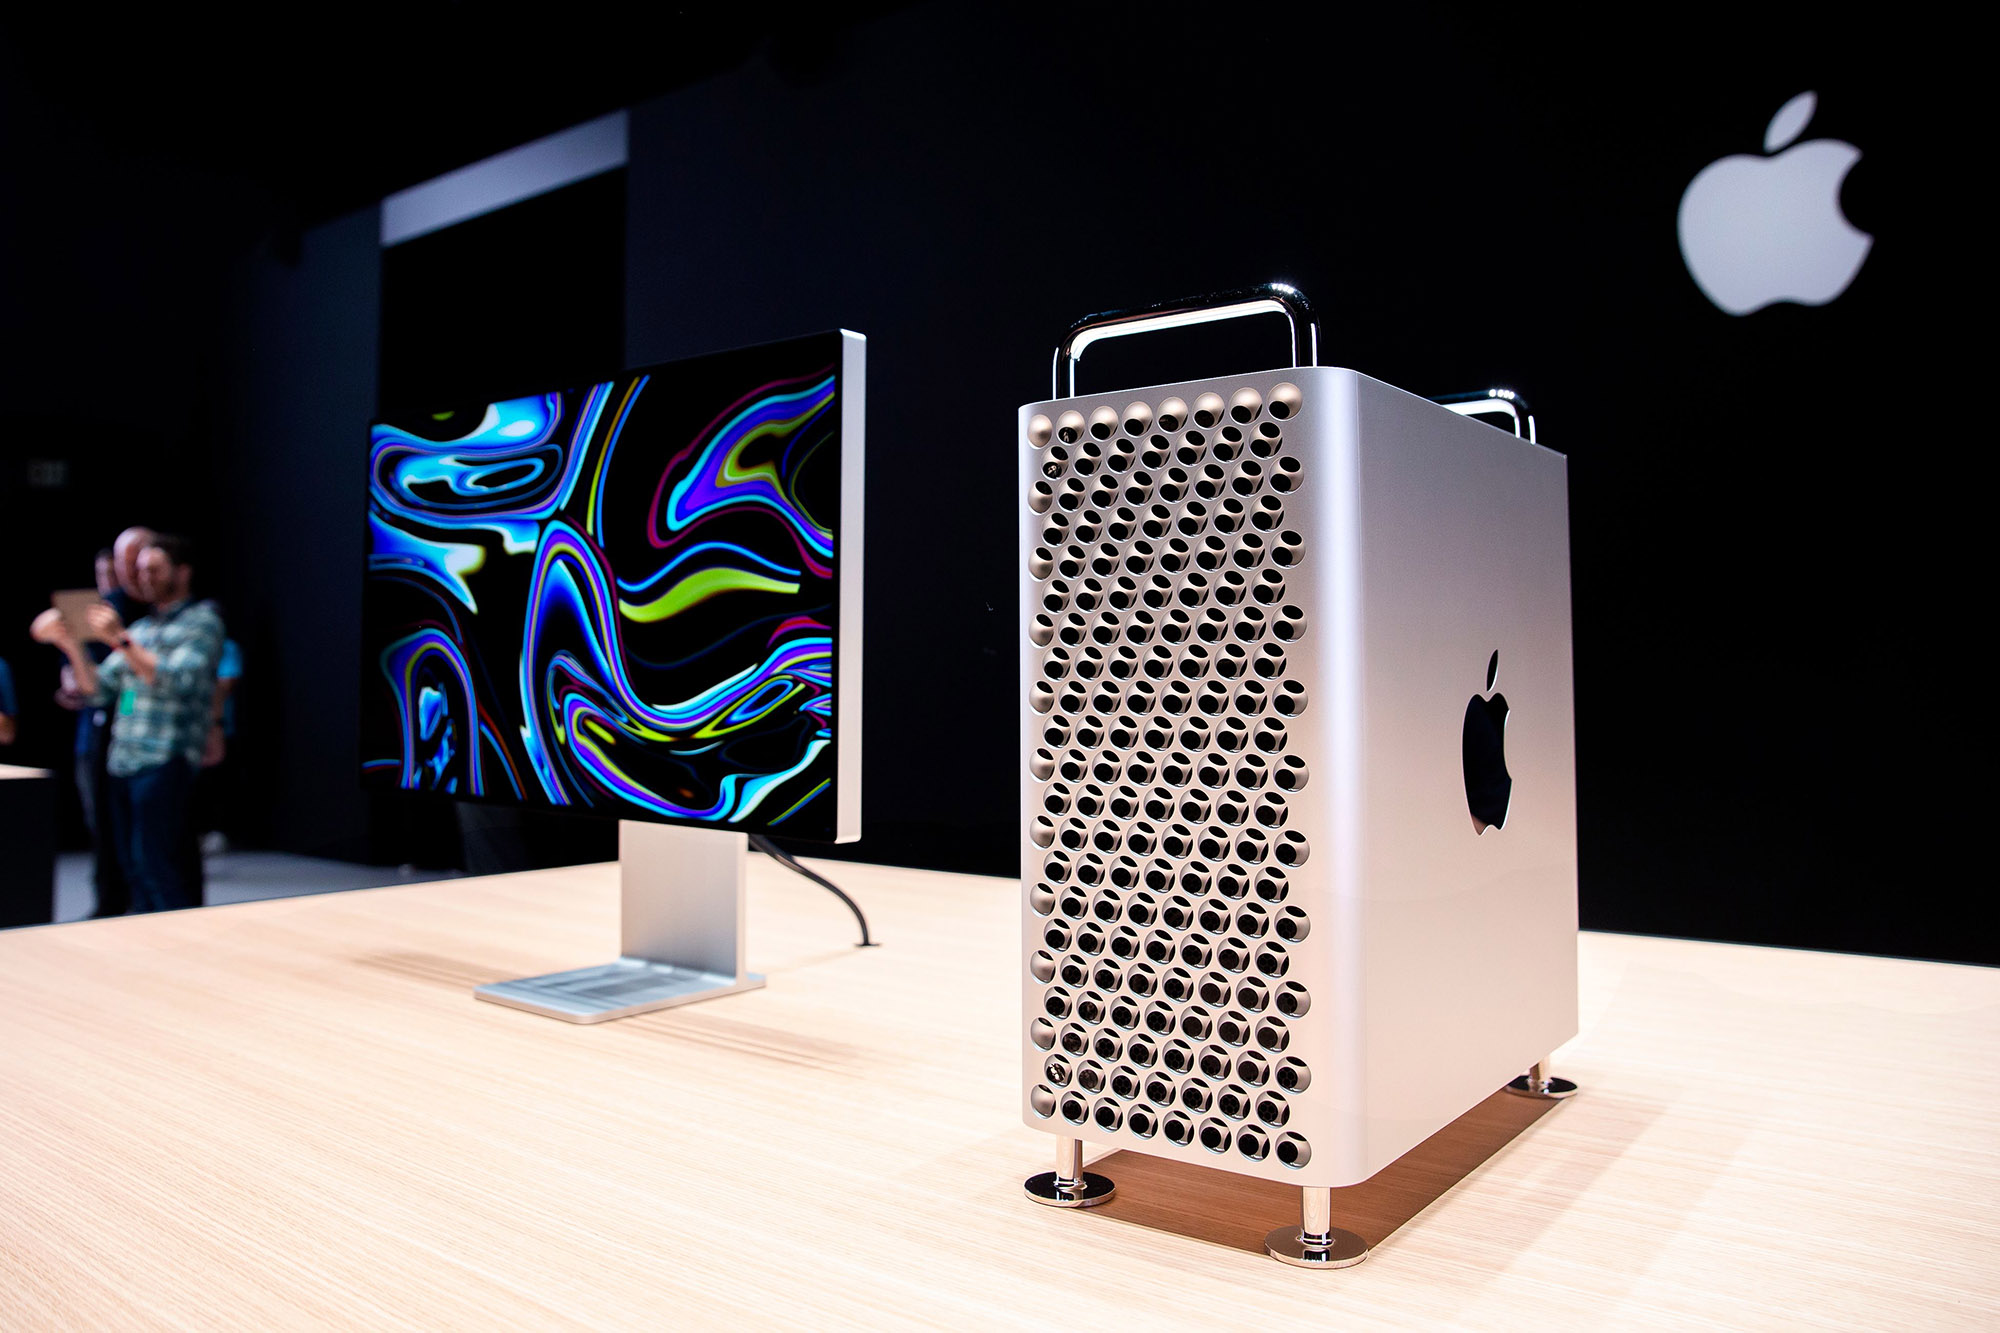 Der neue Mac Pro von Apple wird während der Worldwide Developer Conference (WWDC) von Apple im Showroom ausgestellt.